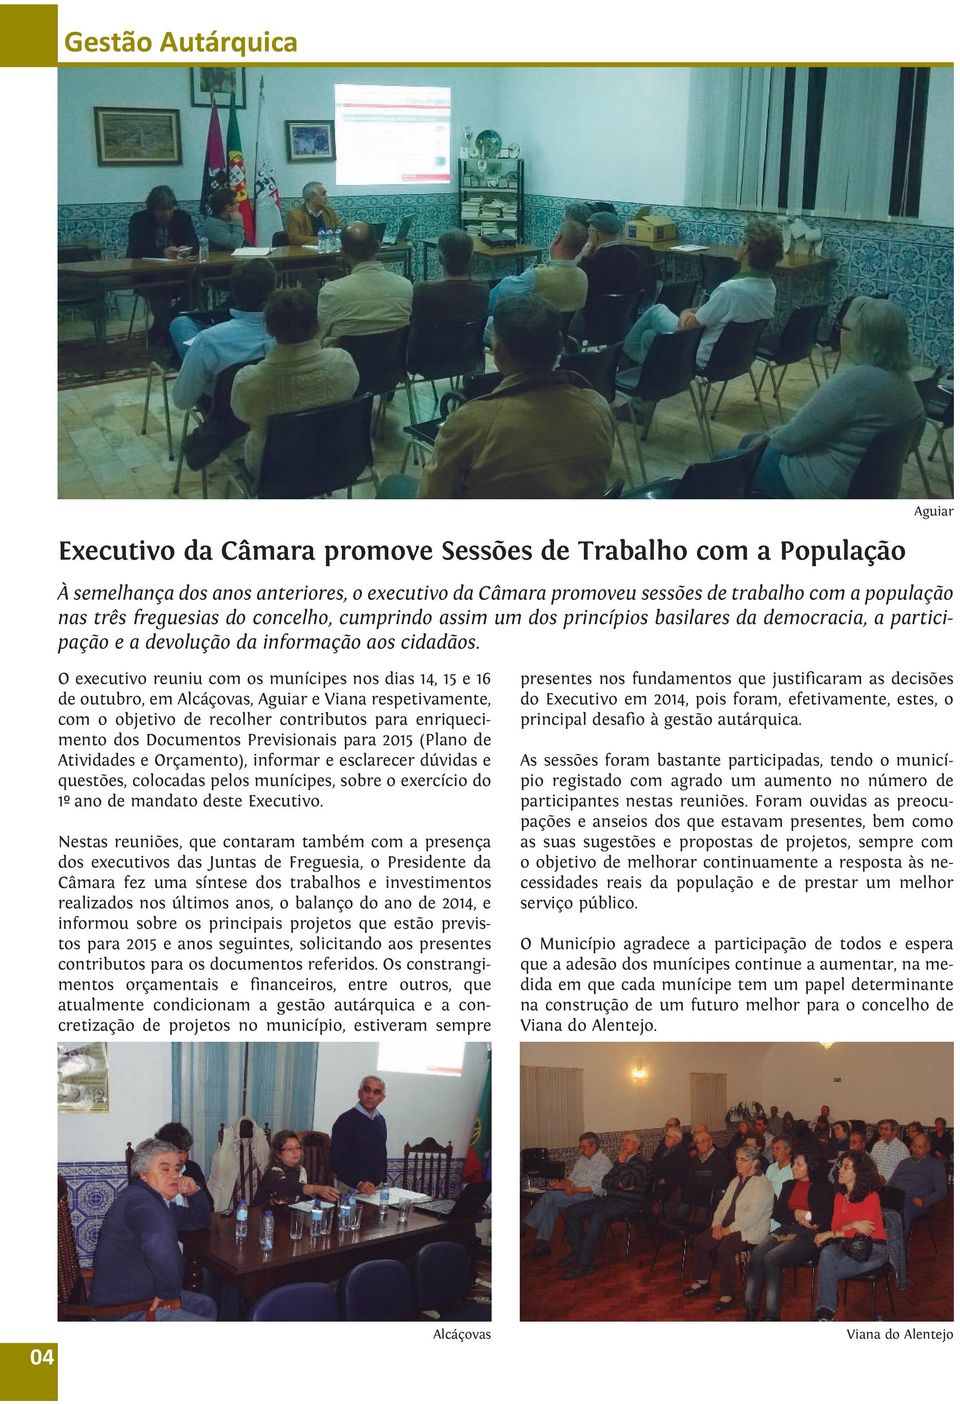 O executivo reuniu com os munícipes nos dias 14, 15 e 16 de outubro, em Alcáçovas, Aguiar e Viana respetivamente, com o objetivo de recolher contributos para enriquecimento dos Documentos